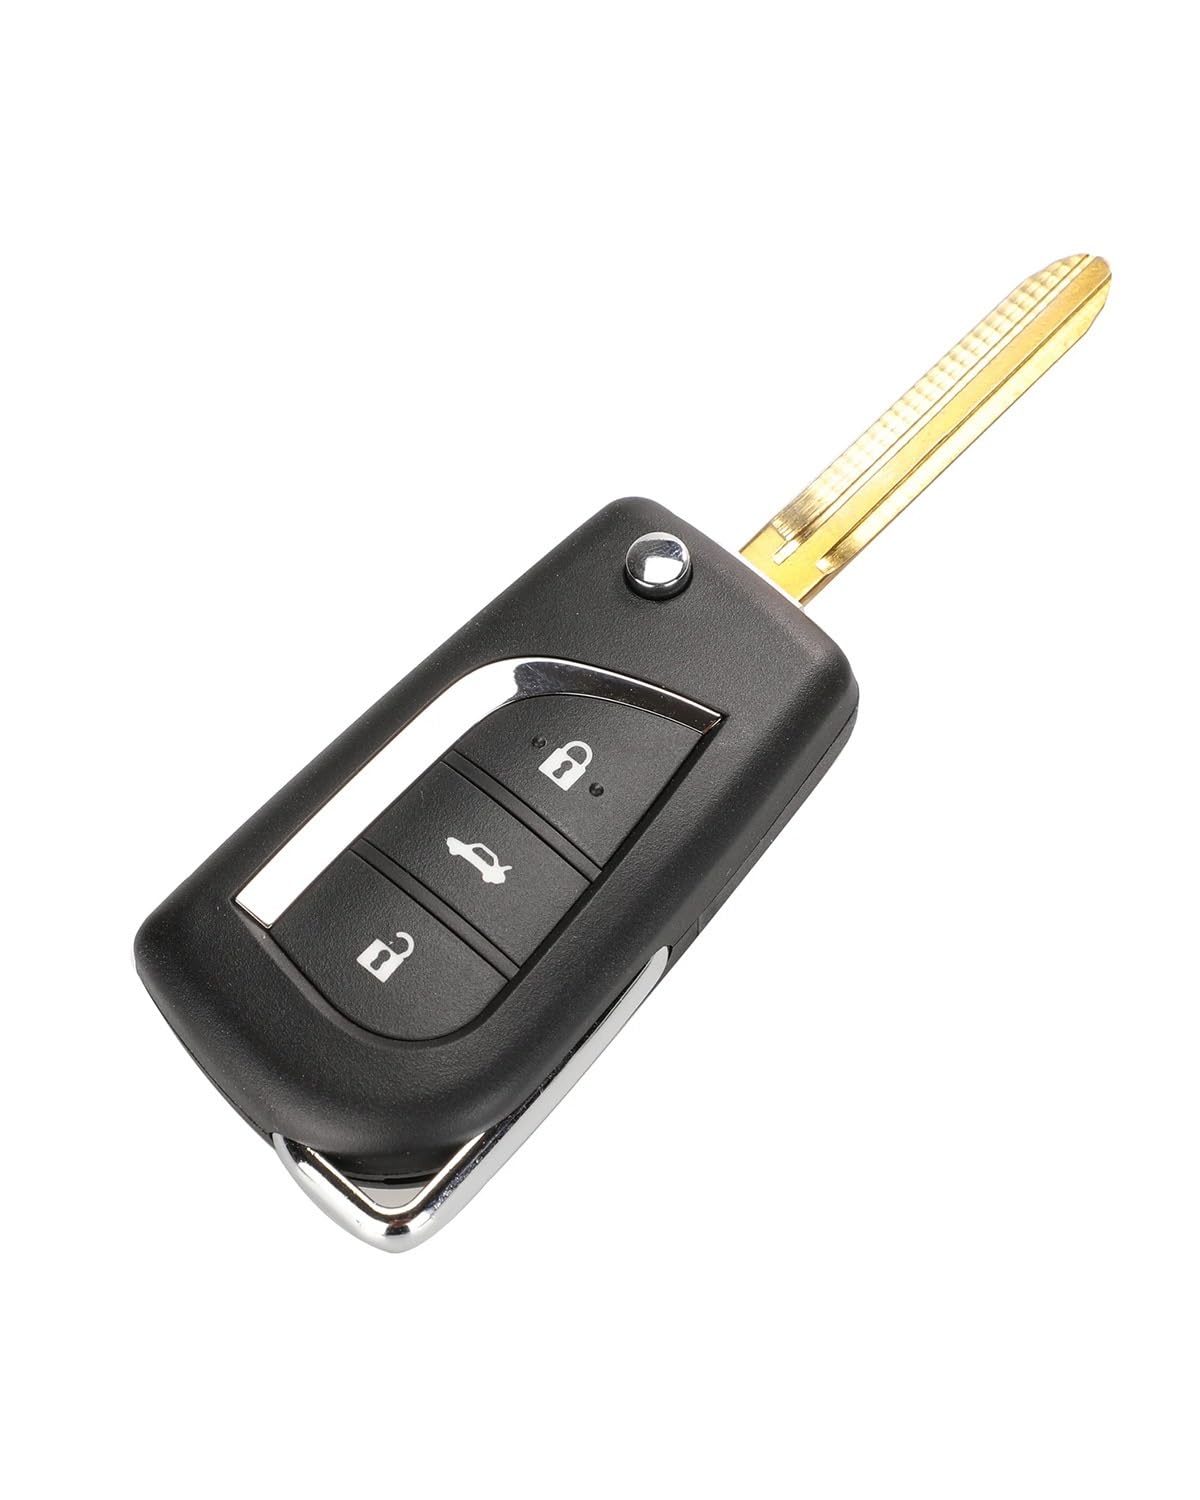 Funkschlüsseletui Remote Folding 2/3 Tasten Auto Schlüssel Shell Für Toyota Für Corolla Für RAV4 Vor 2013 Toy43 Toy48 Autoschlüsseletui(3b toy43) von MXDDWLKJ